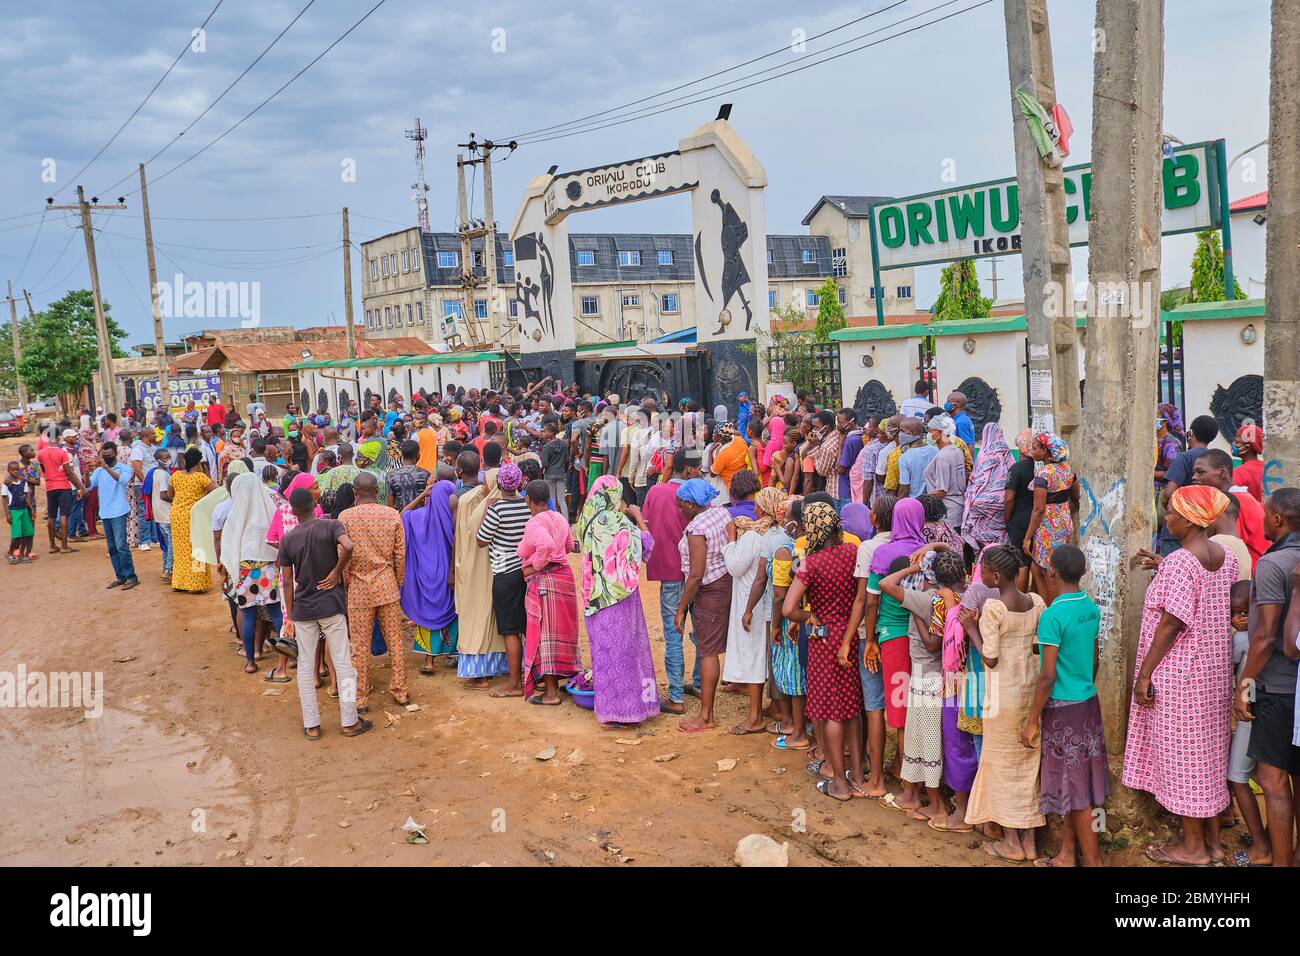 La gente si accoda per i pacchetti di soccorso durante il blocco pandemico del Coronavirus del Covid-19 all'Oriwu Club di Ikorodu, Lagos - Nigeria. Foto Stock